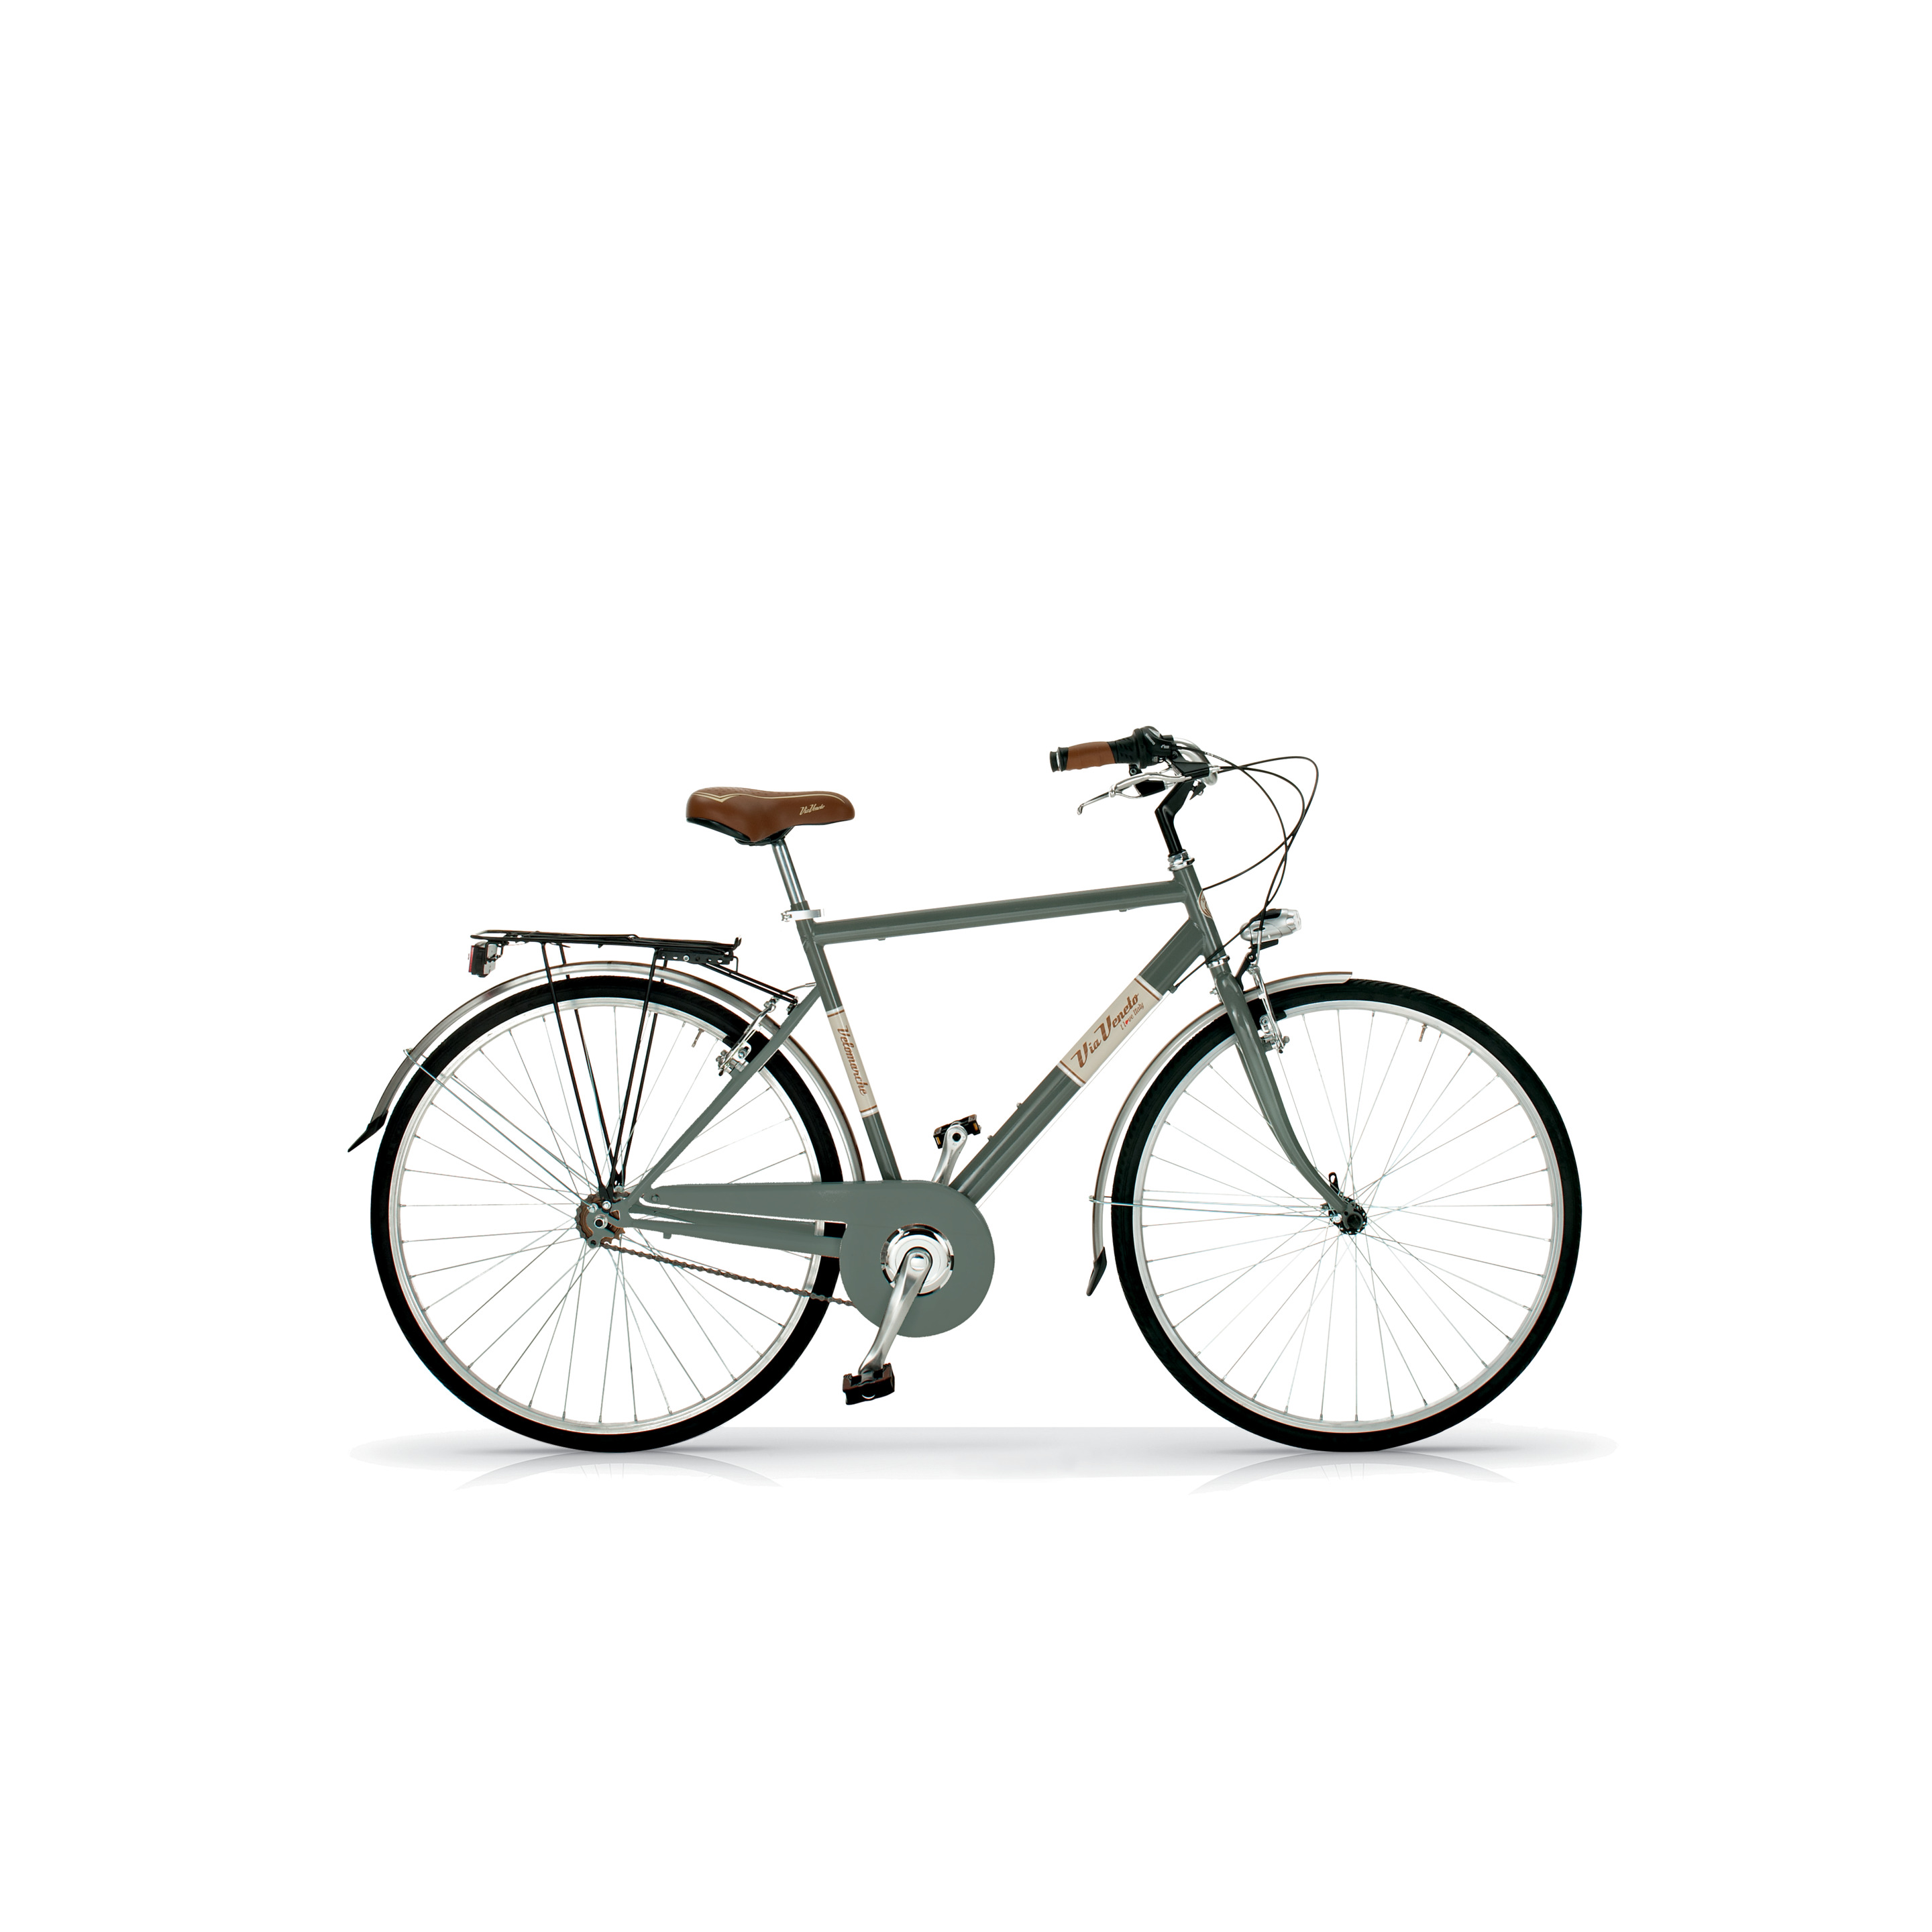 Bicicleta Via Veneto 605man, Cuadro De Acero De 50cm, Ruedas De 700x35c, 6 Velocidades Gris